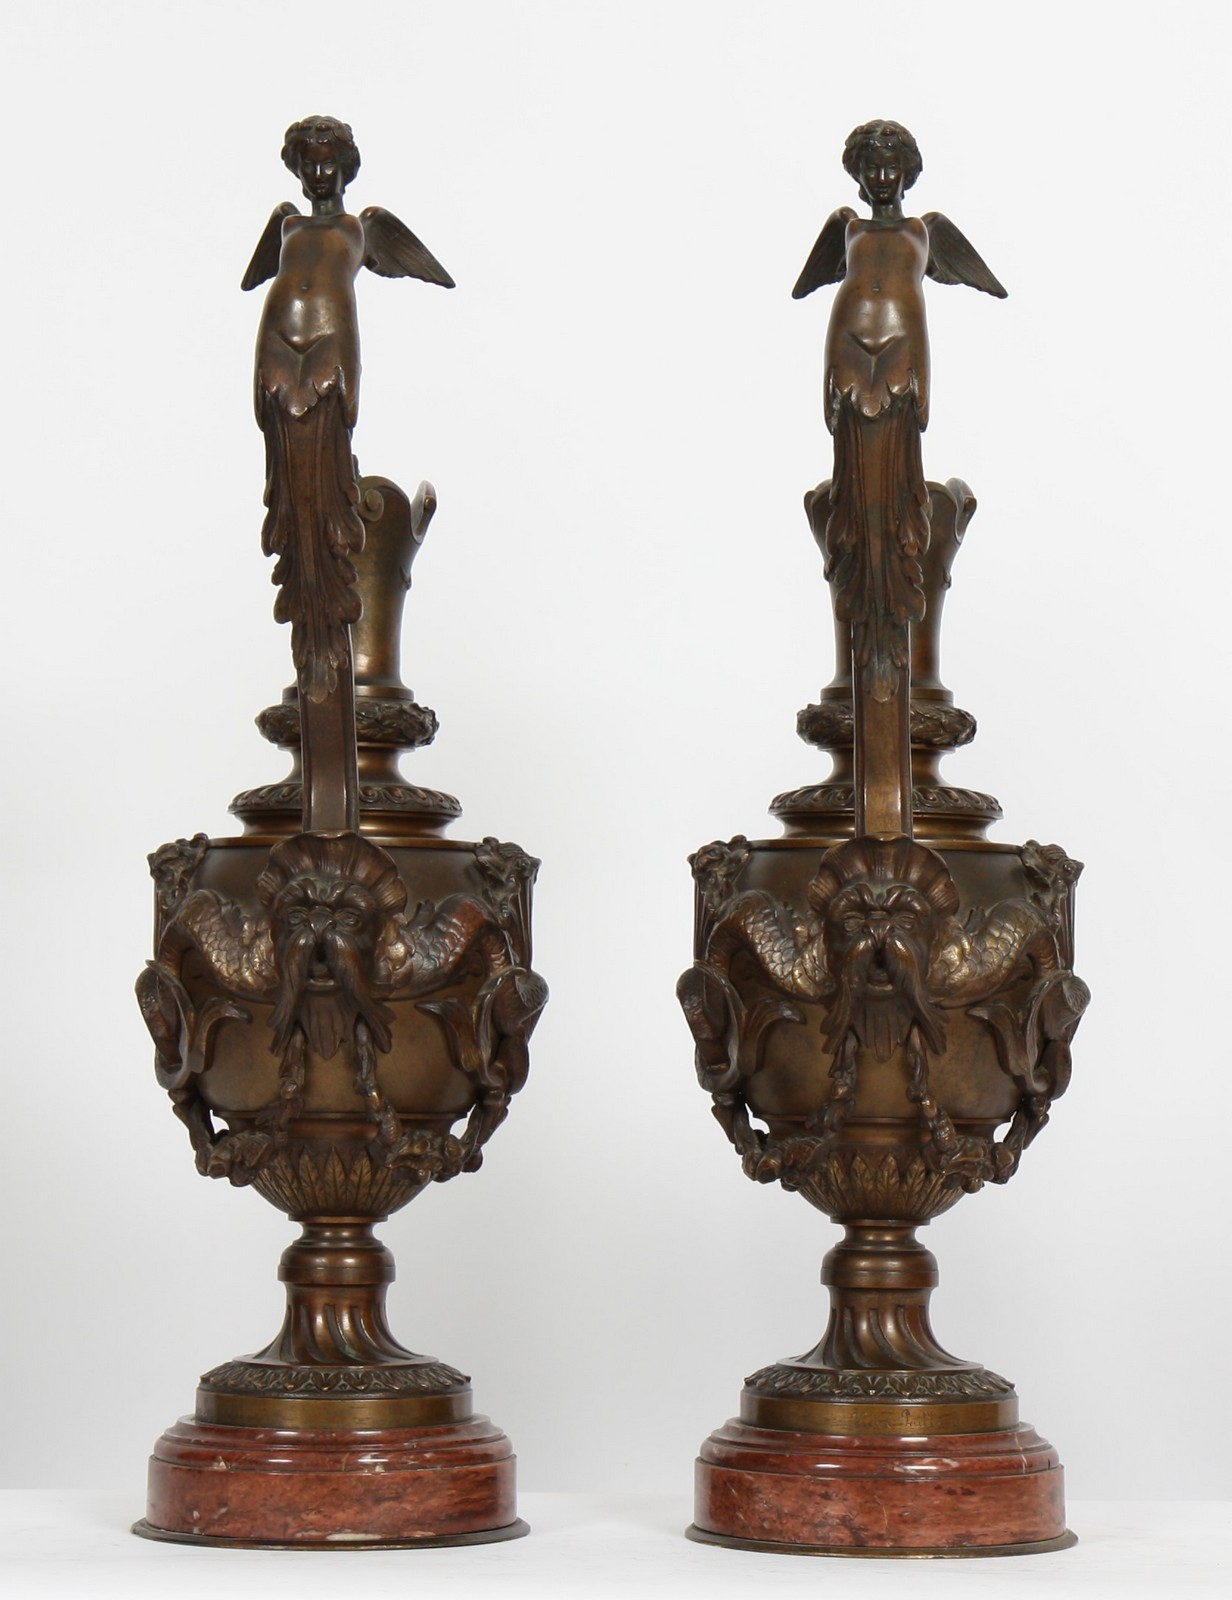 IMPORTANTE PAIRE D'AIGUIERES BRONZE XIXè
En bronze à pâtine médaille à riche décor sculpté à - Image 2 of 3